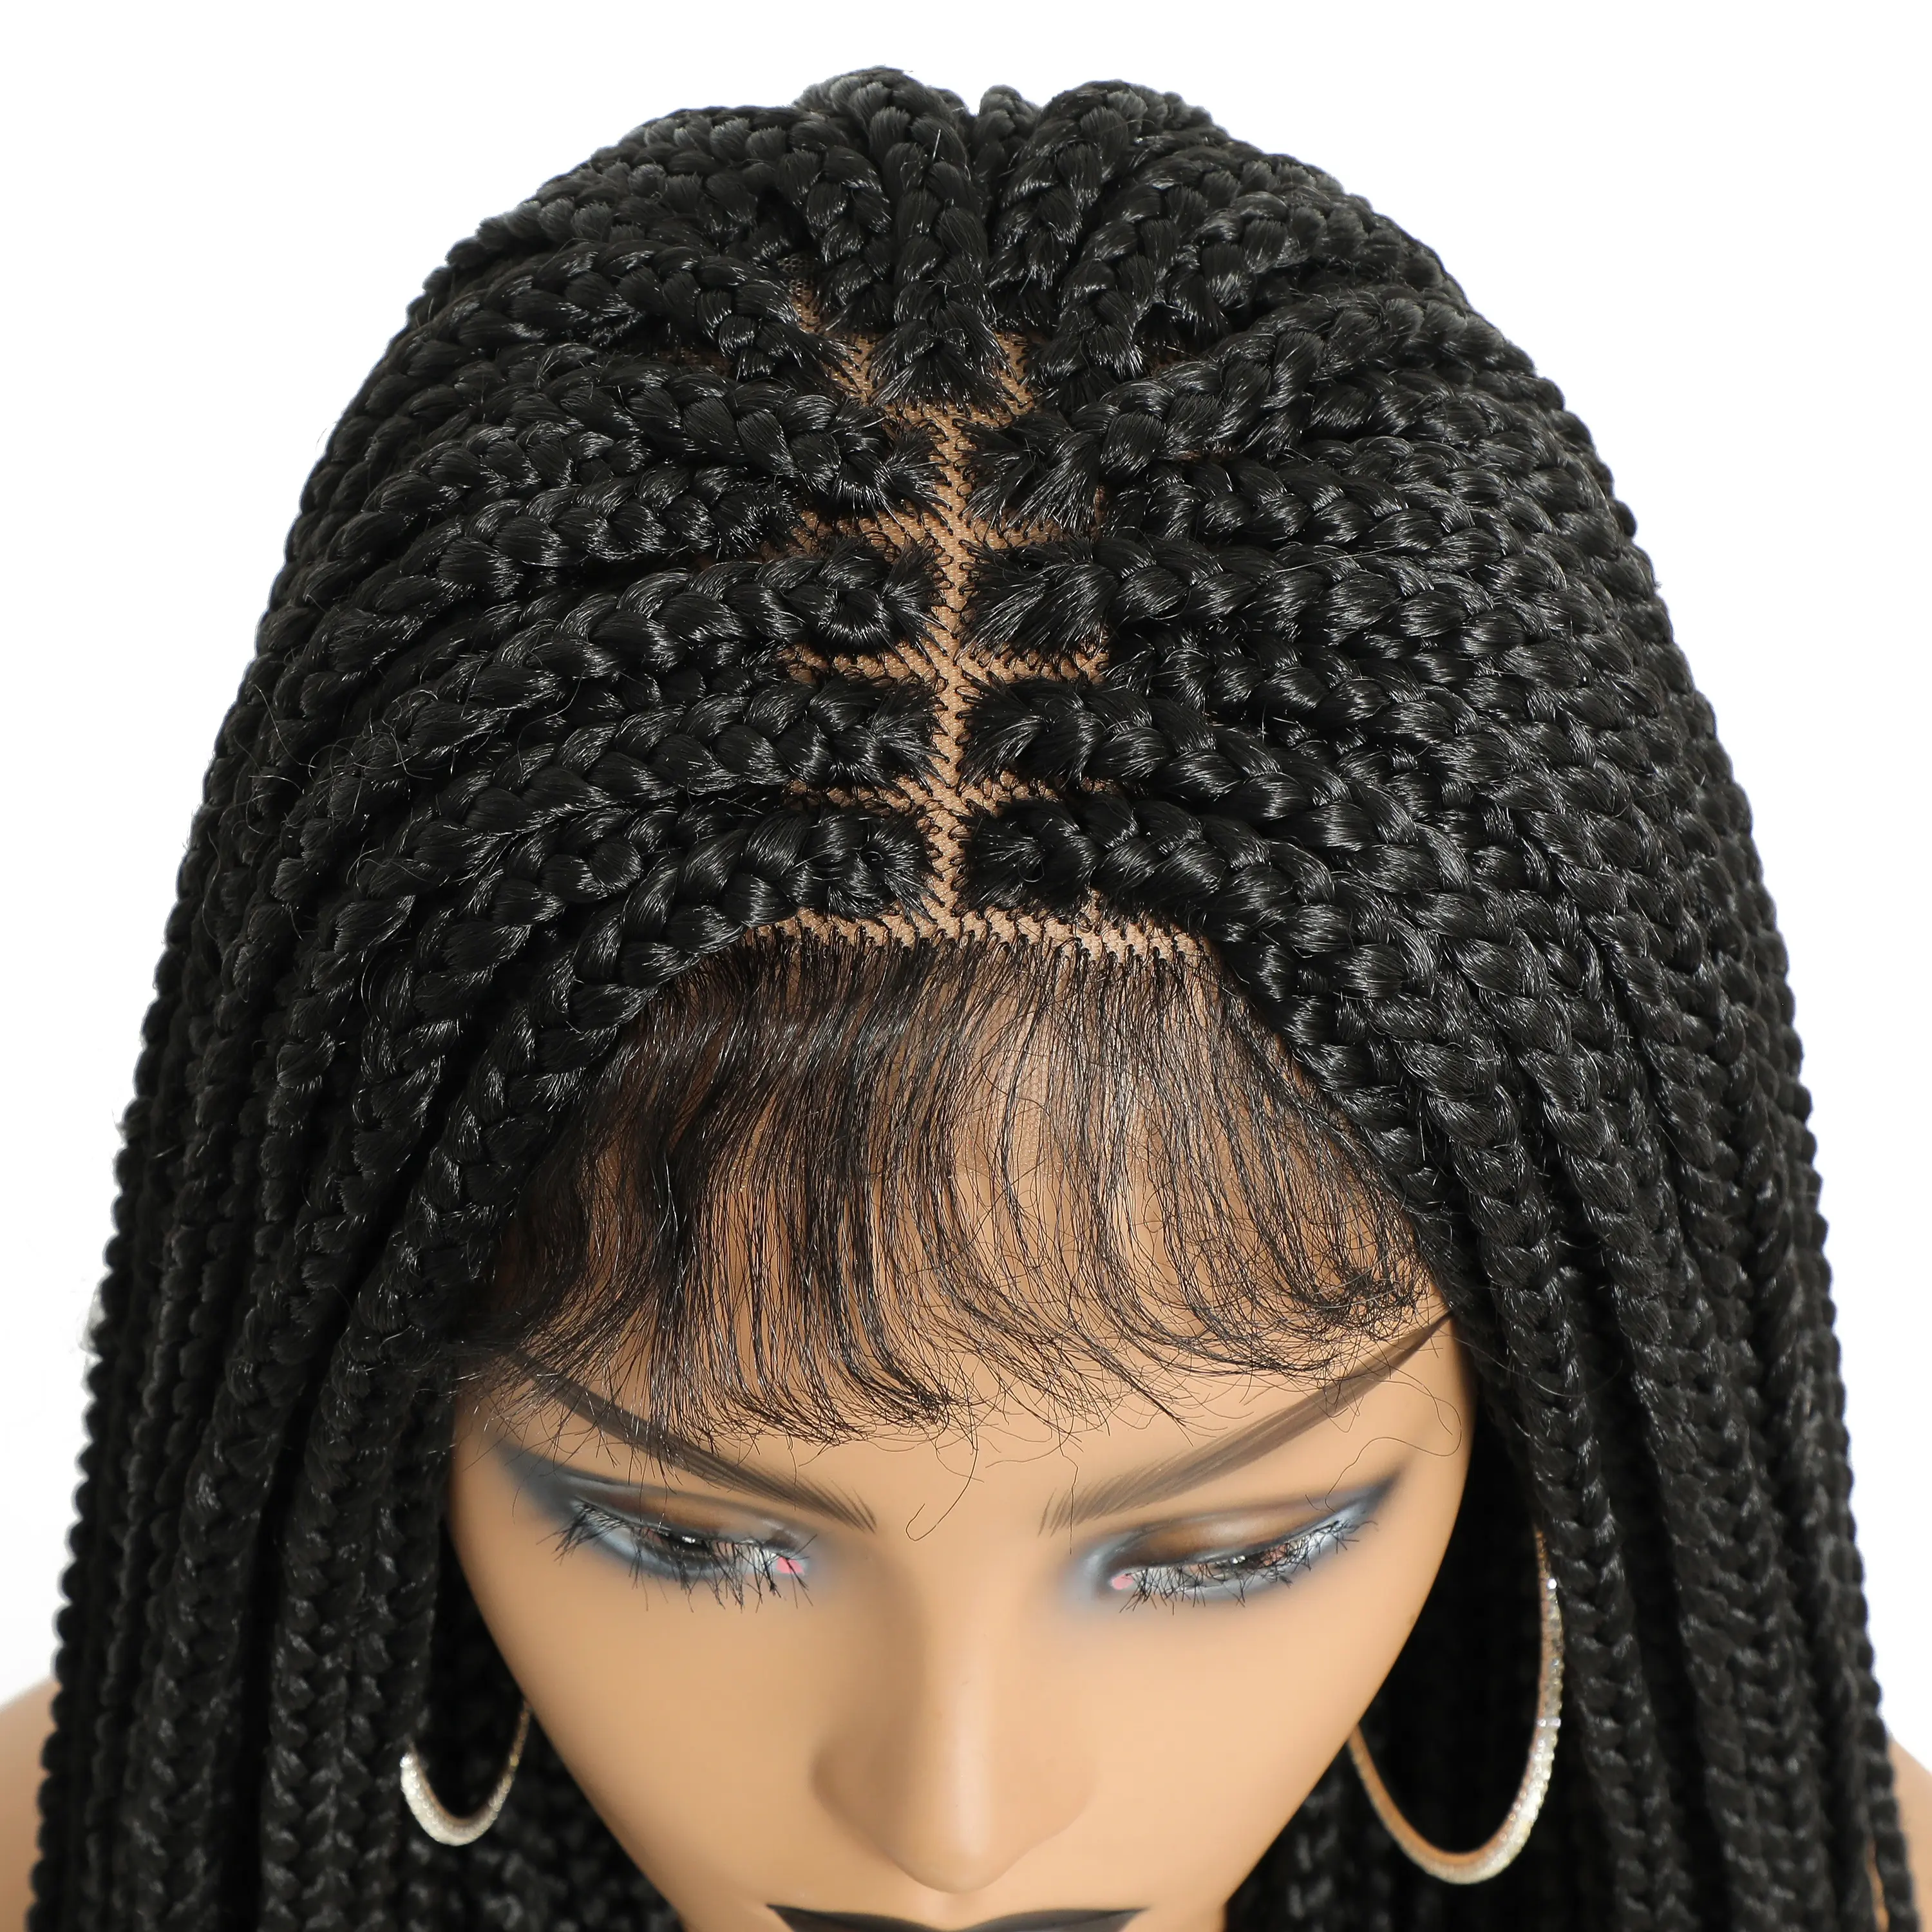 Peluca de cabello sintético sin pegamento, hecha a mano, con cierre de encaje trenzado africano